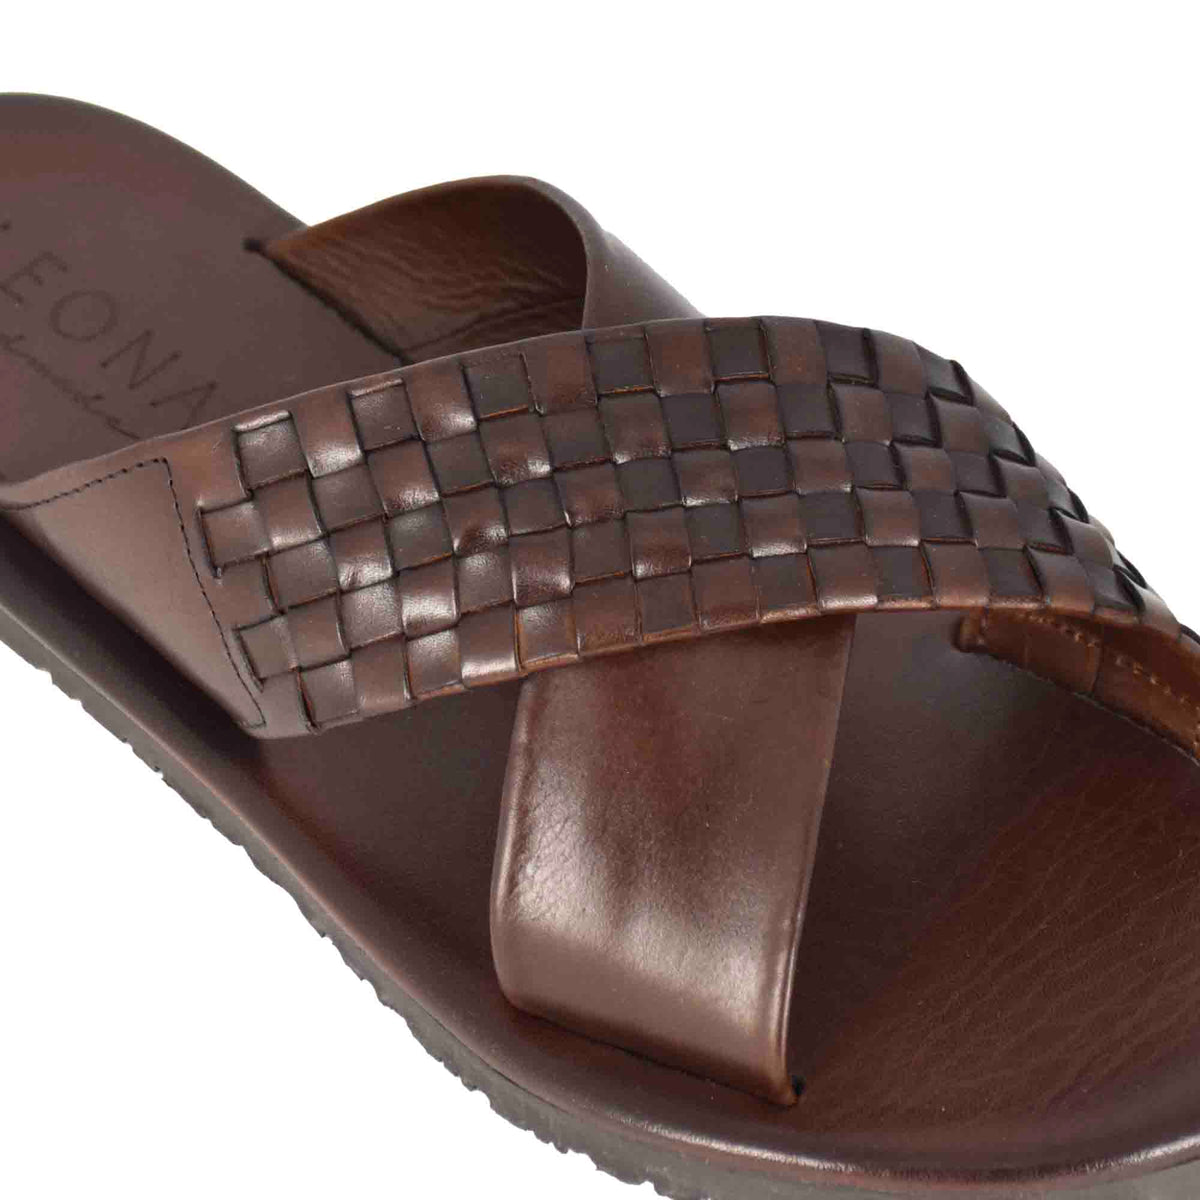 Handmade brown leather sandal slippers for men